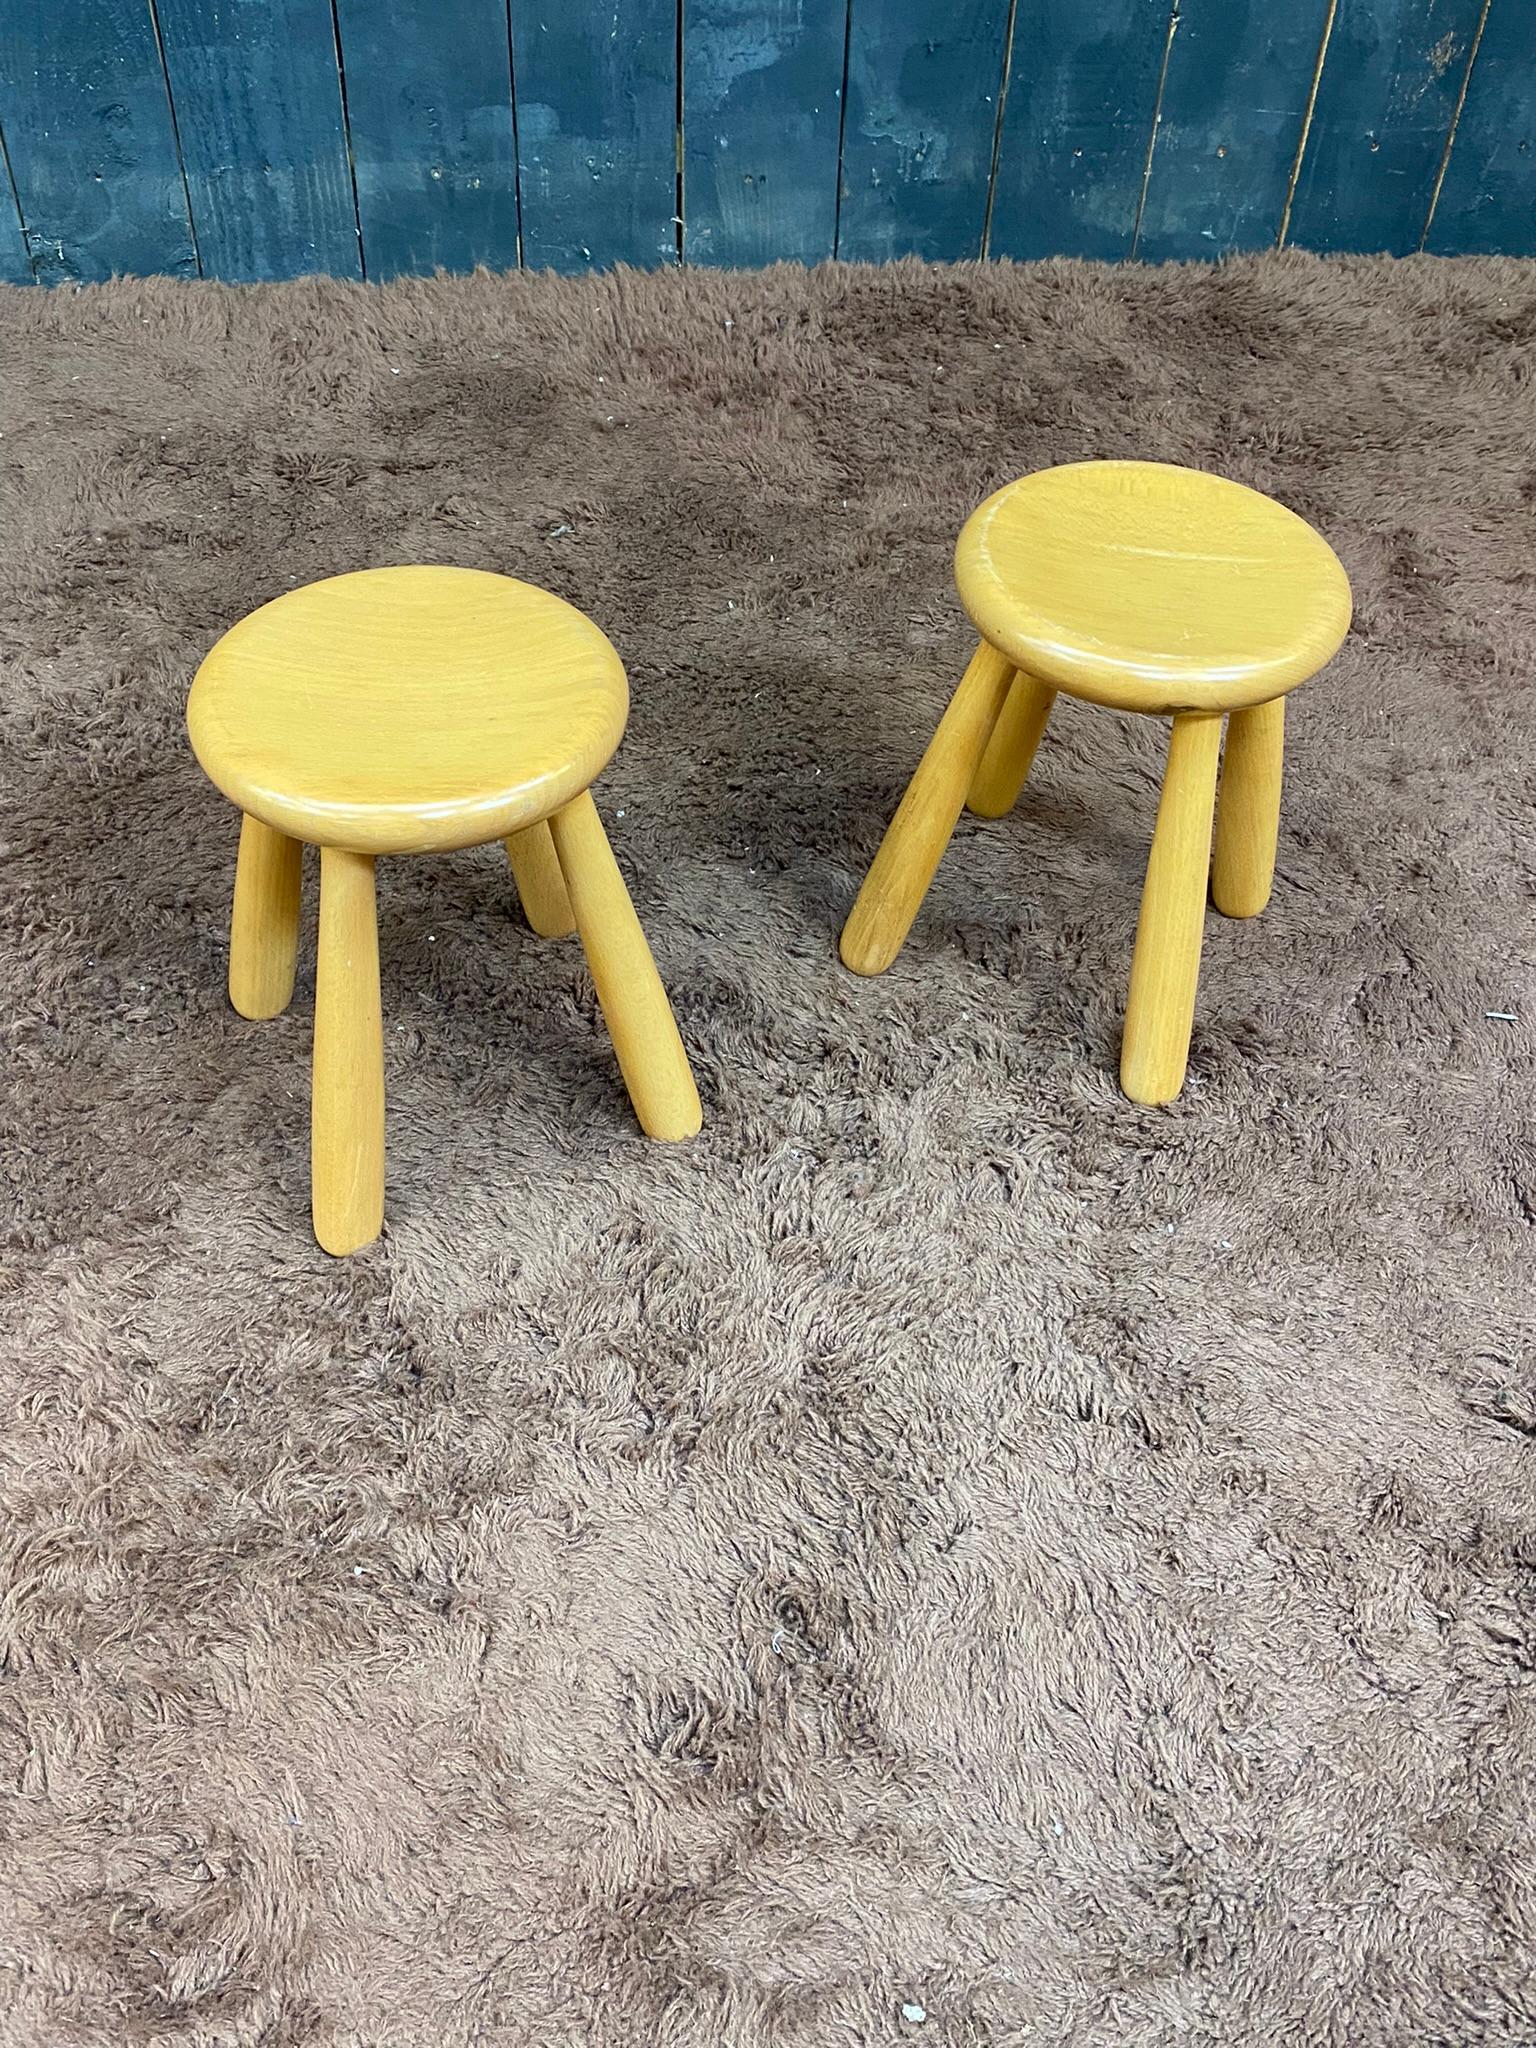 Pair of small stools, circa 1970.